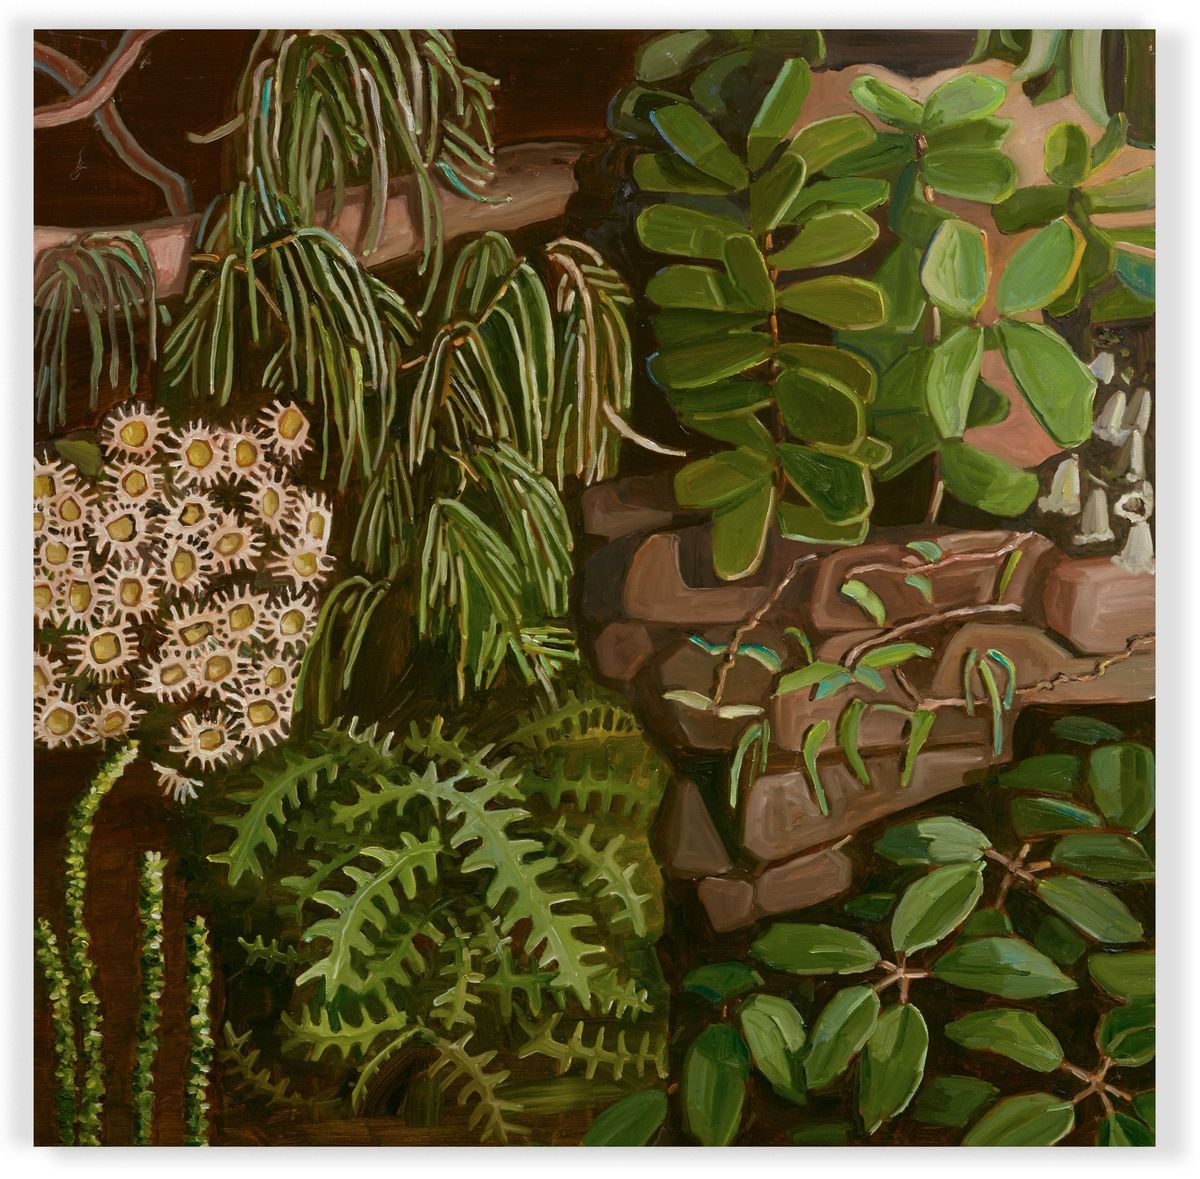 Jane Guthleben - Floralscape Wollemi (detail) - panel 3